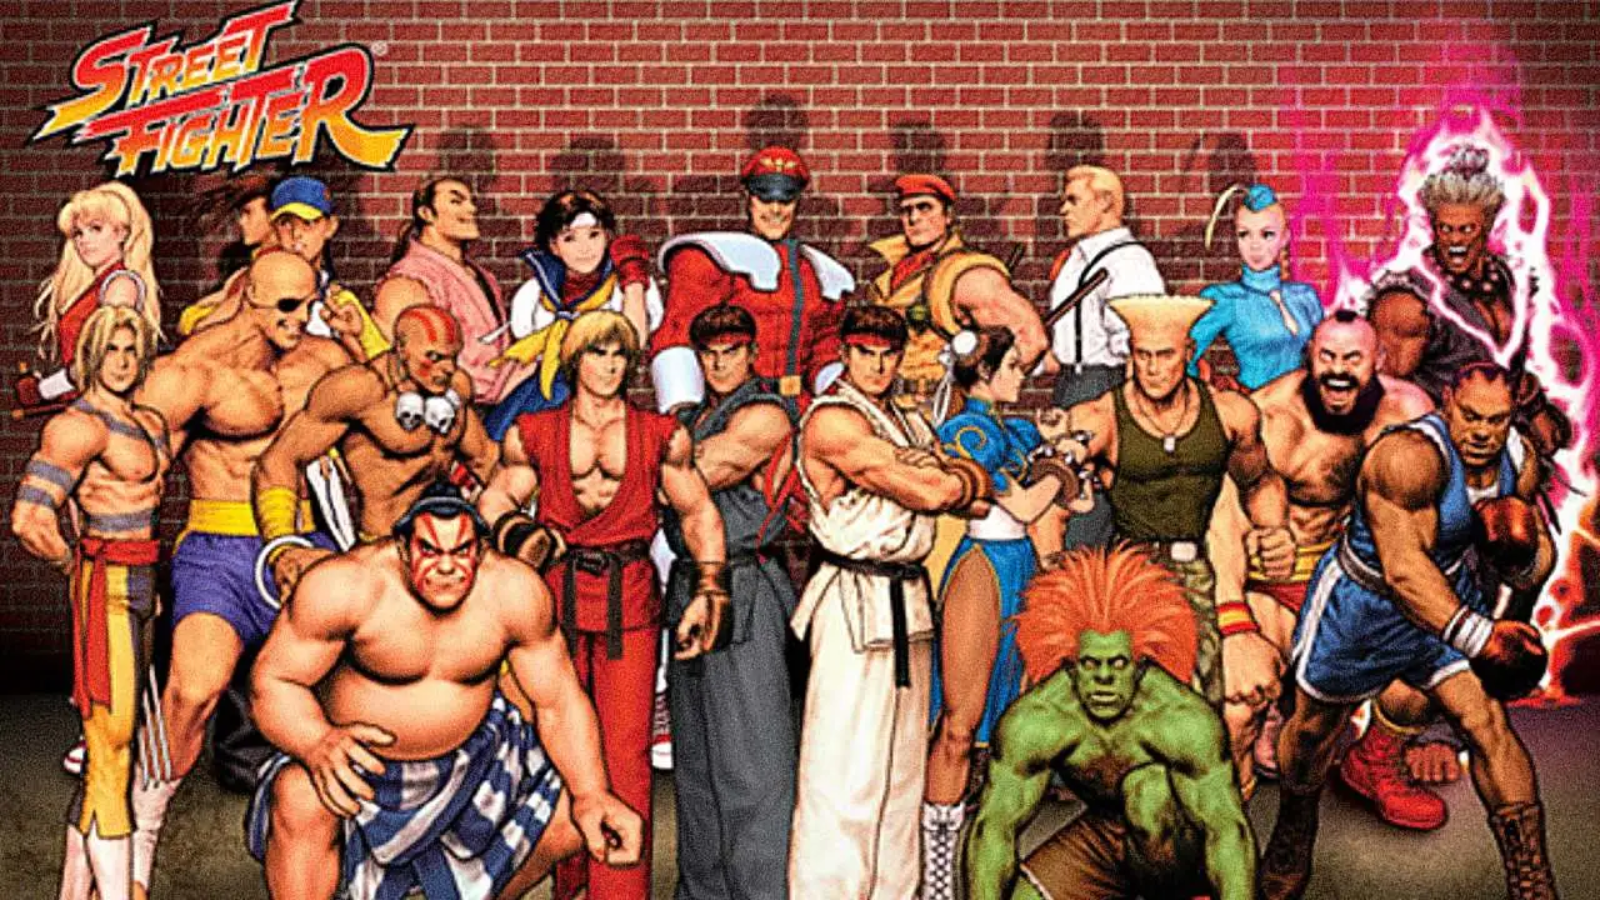 Street Fighter Sony confirma fecha de estreno de reboot en cine